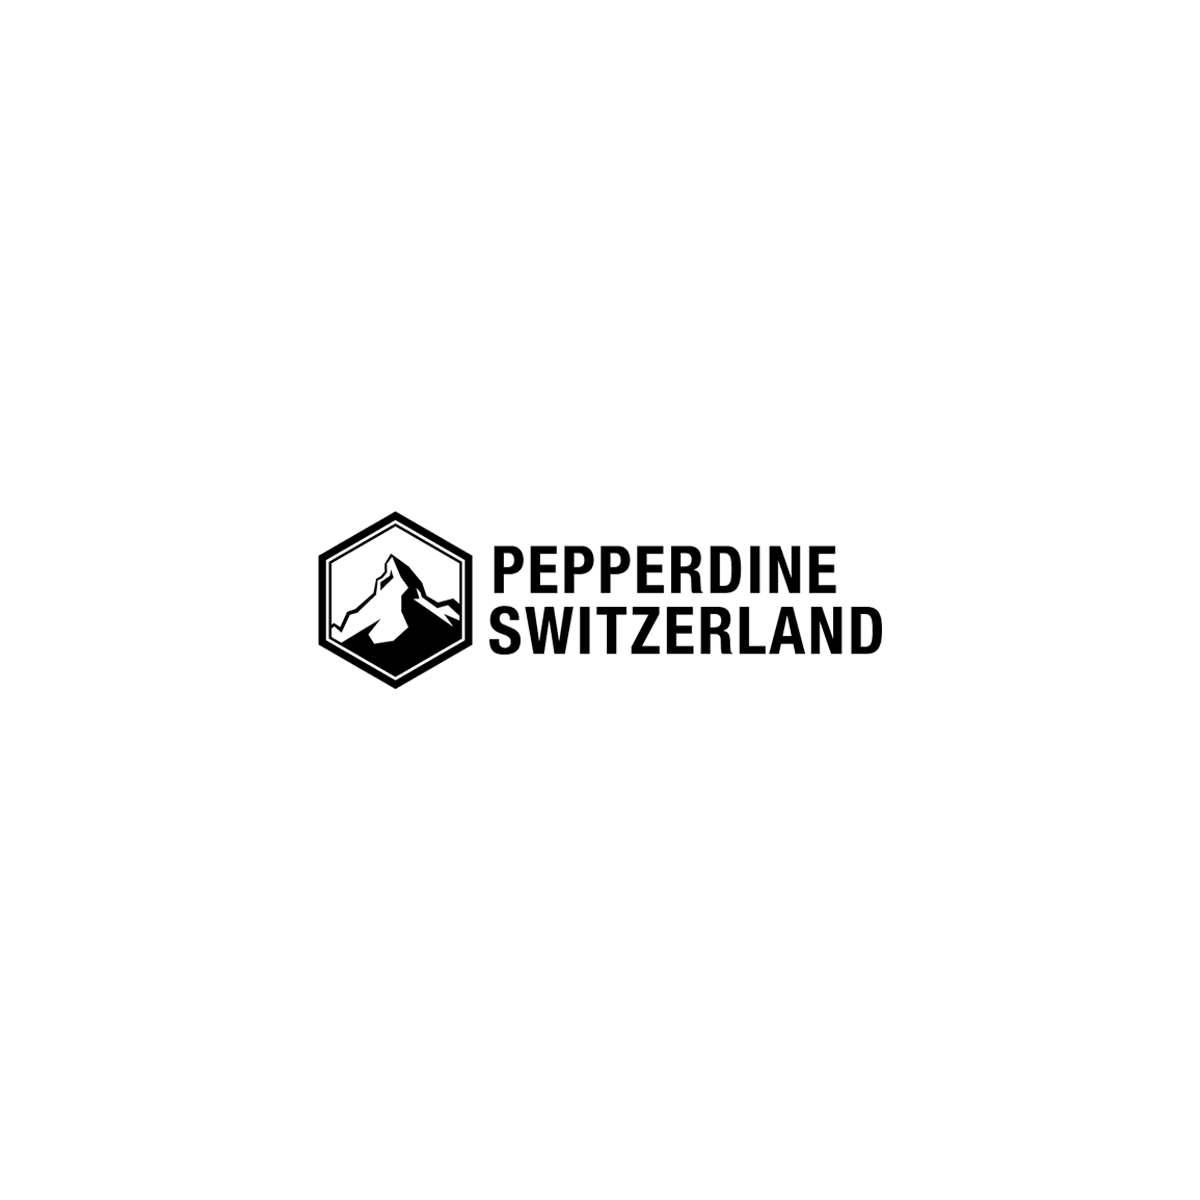 Referenz: Pepperdine Switzerland